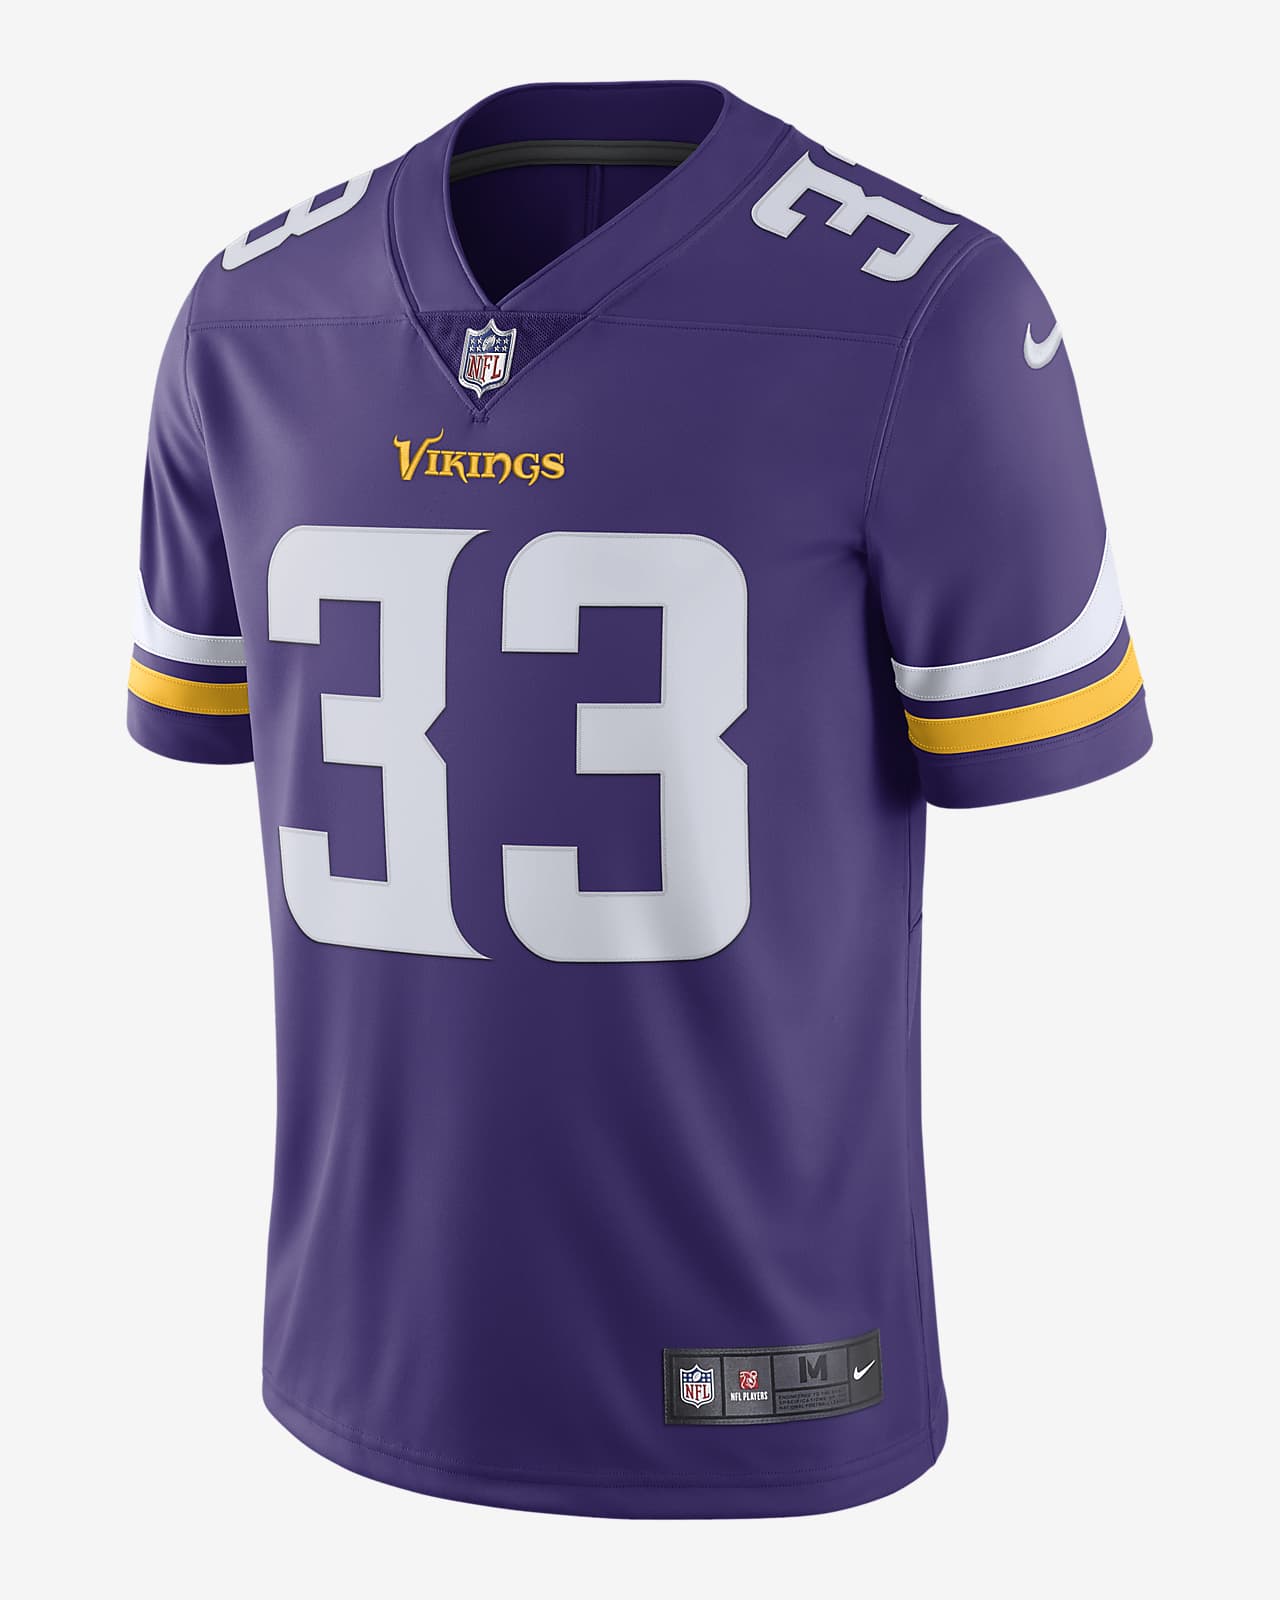 î€€NFLî€ Minnesota Vikings Vapor Untouchable (Dalvin Cook) î€€Men\'sî€ Limited ...